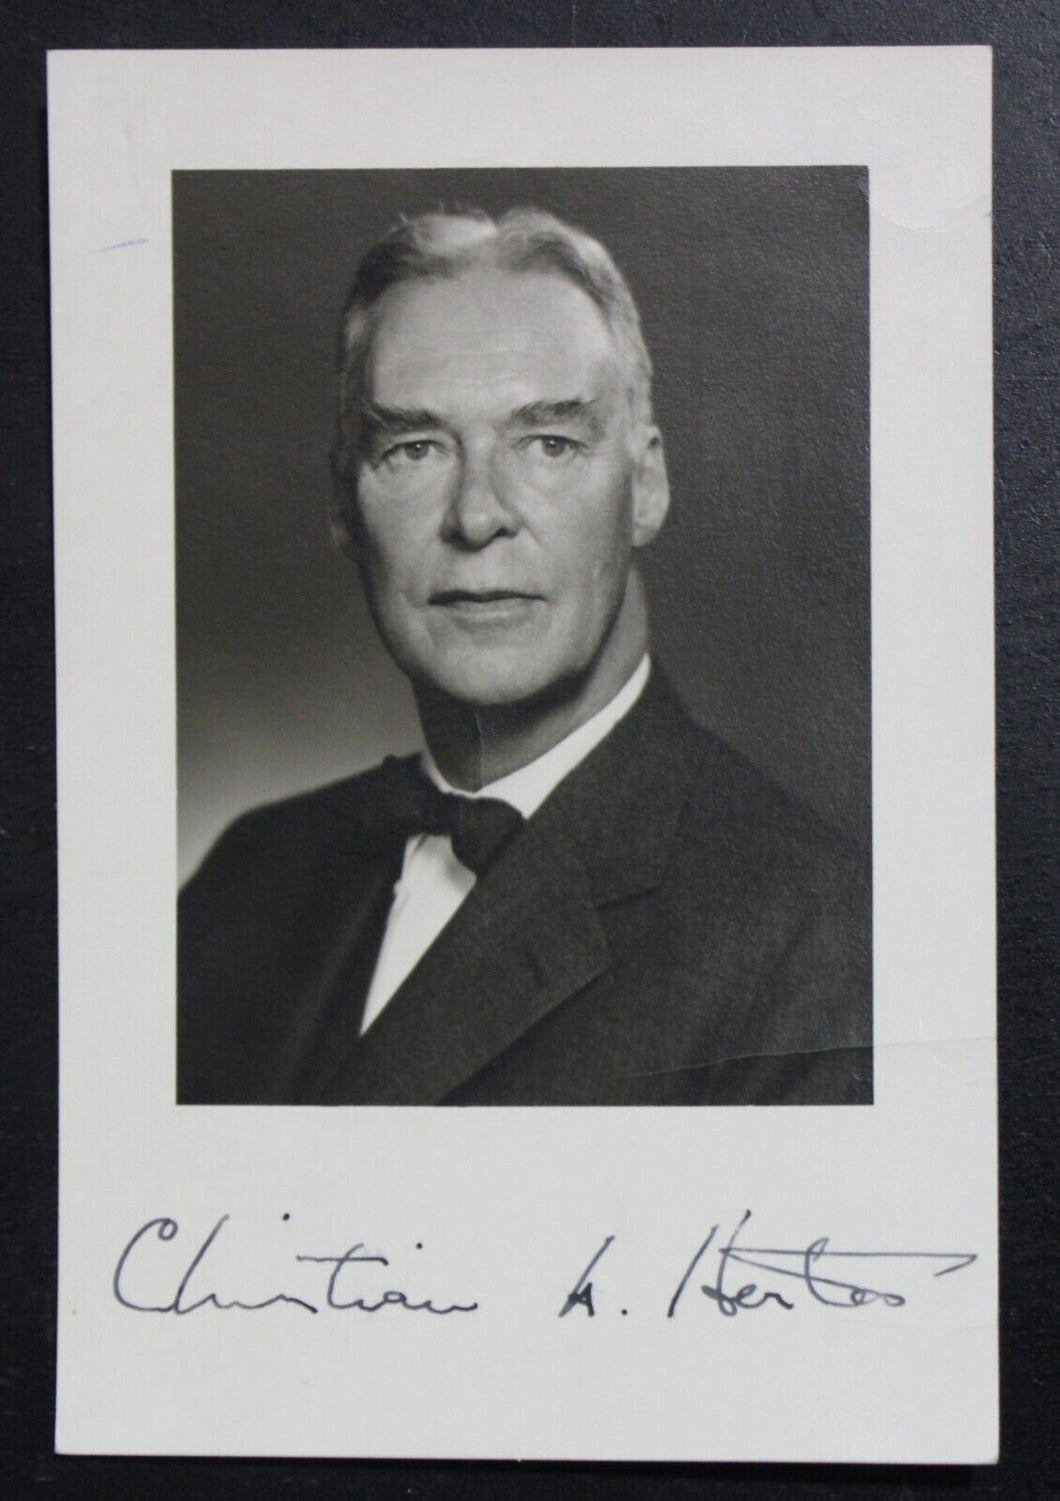 Christian Herter Autograph (Governor of Massachusetts, 1953-1957)